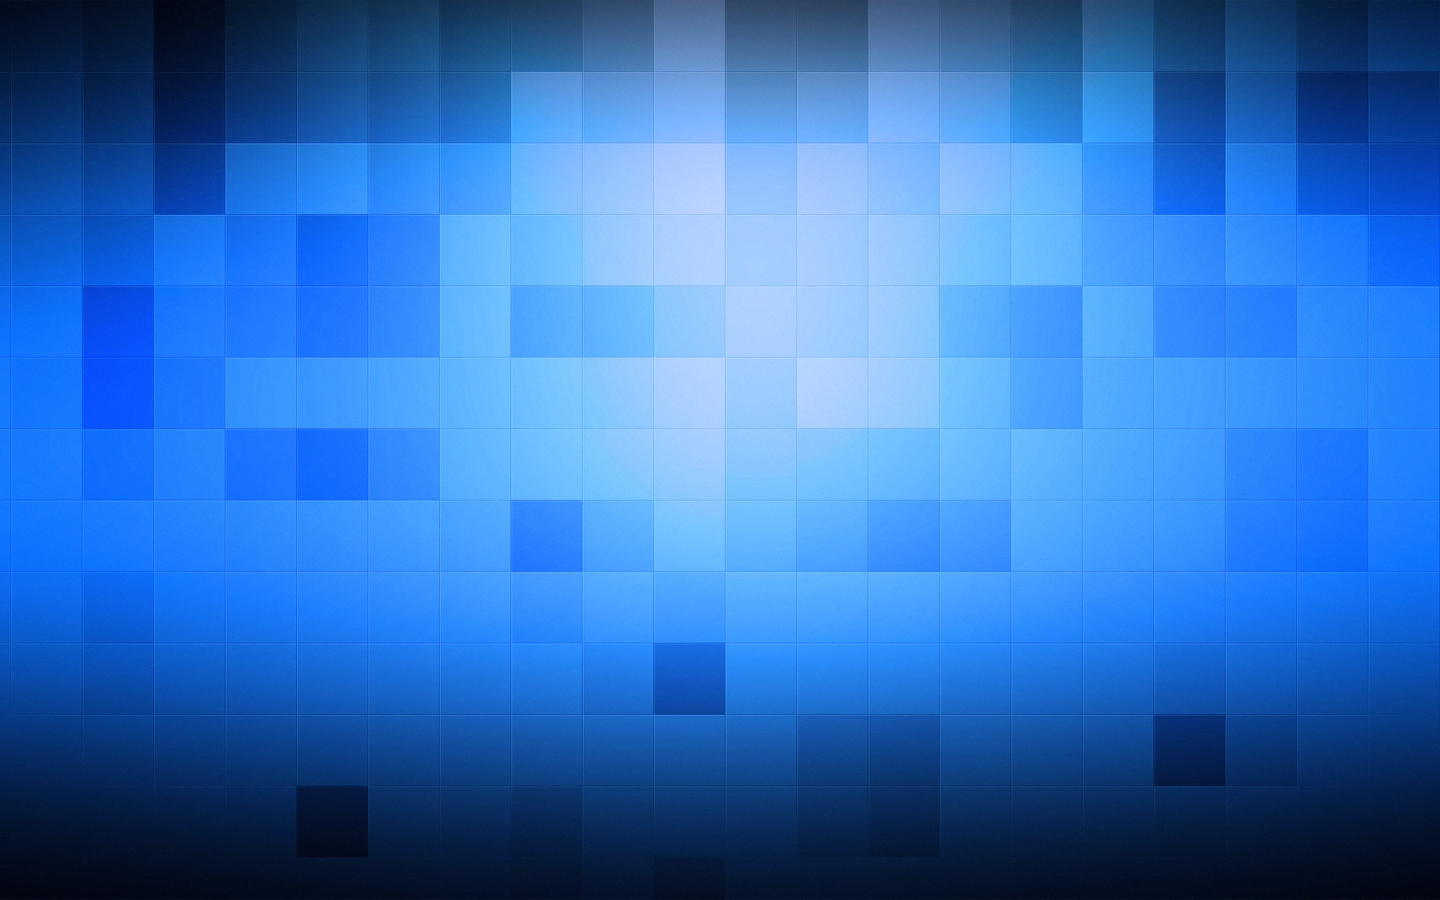 Картинка: Кубики, квадраты, голубой, синий, фон